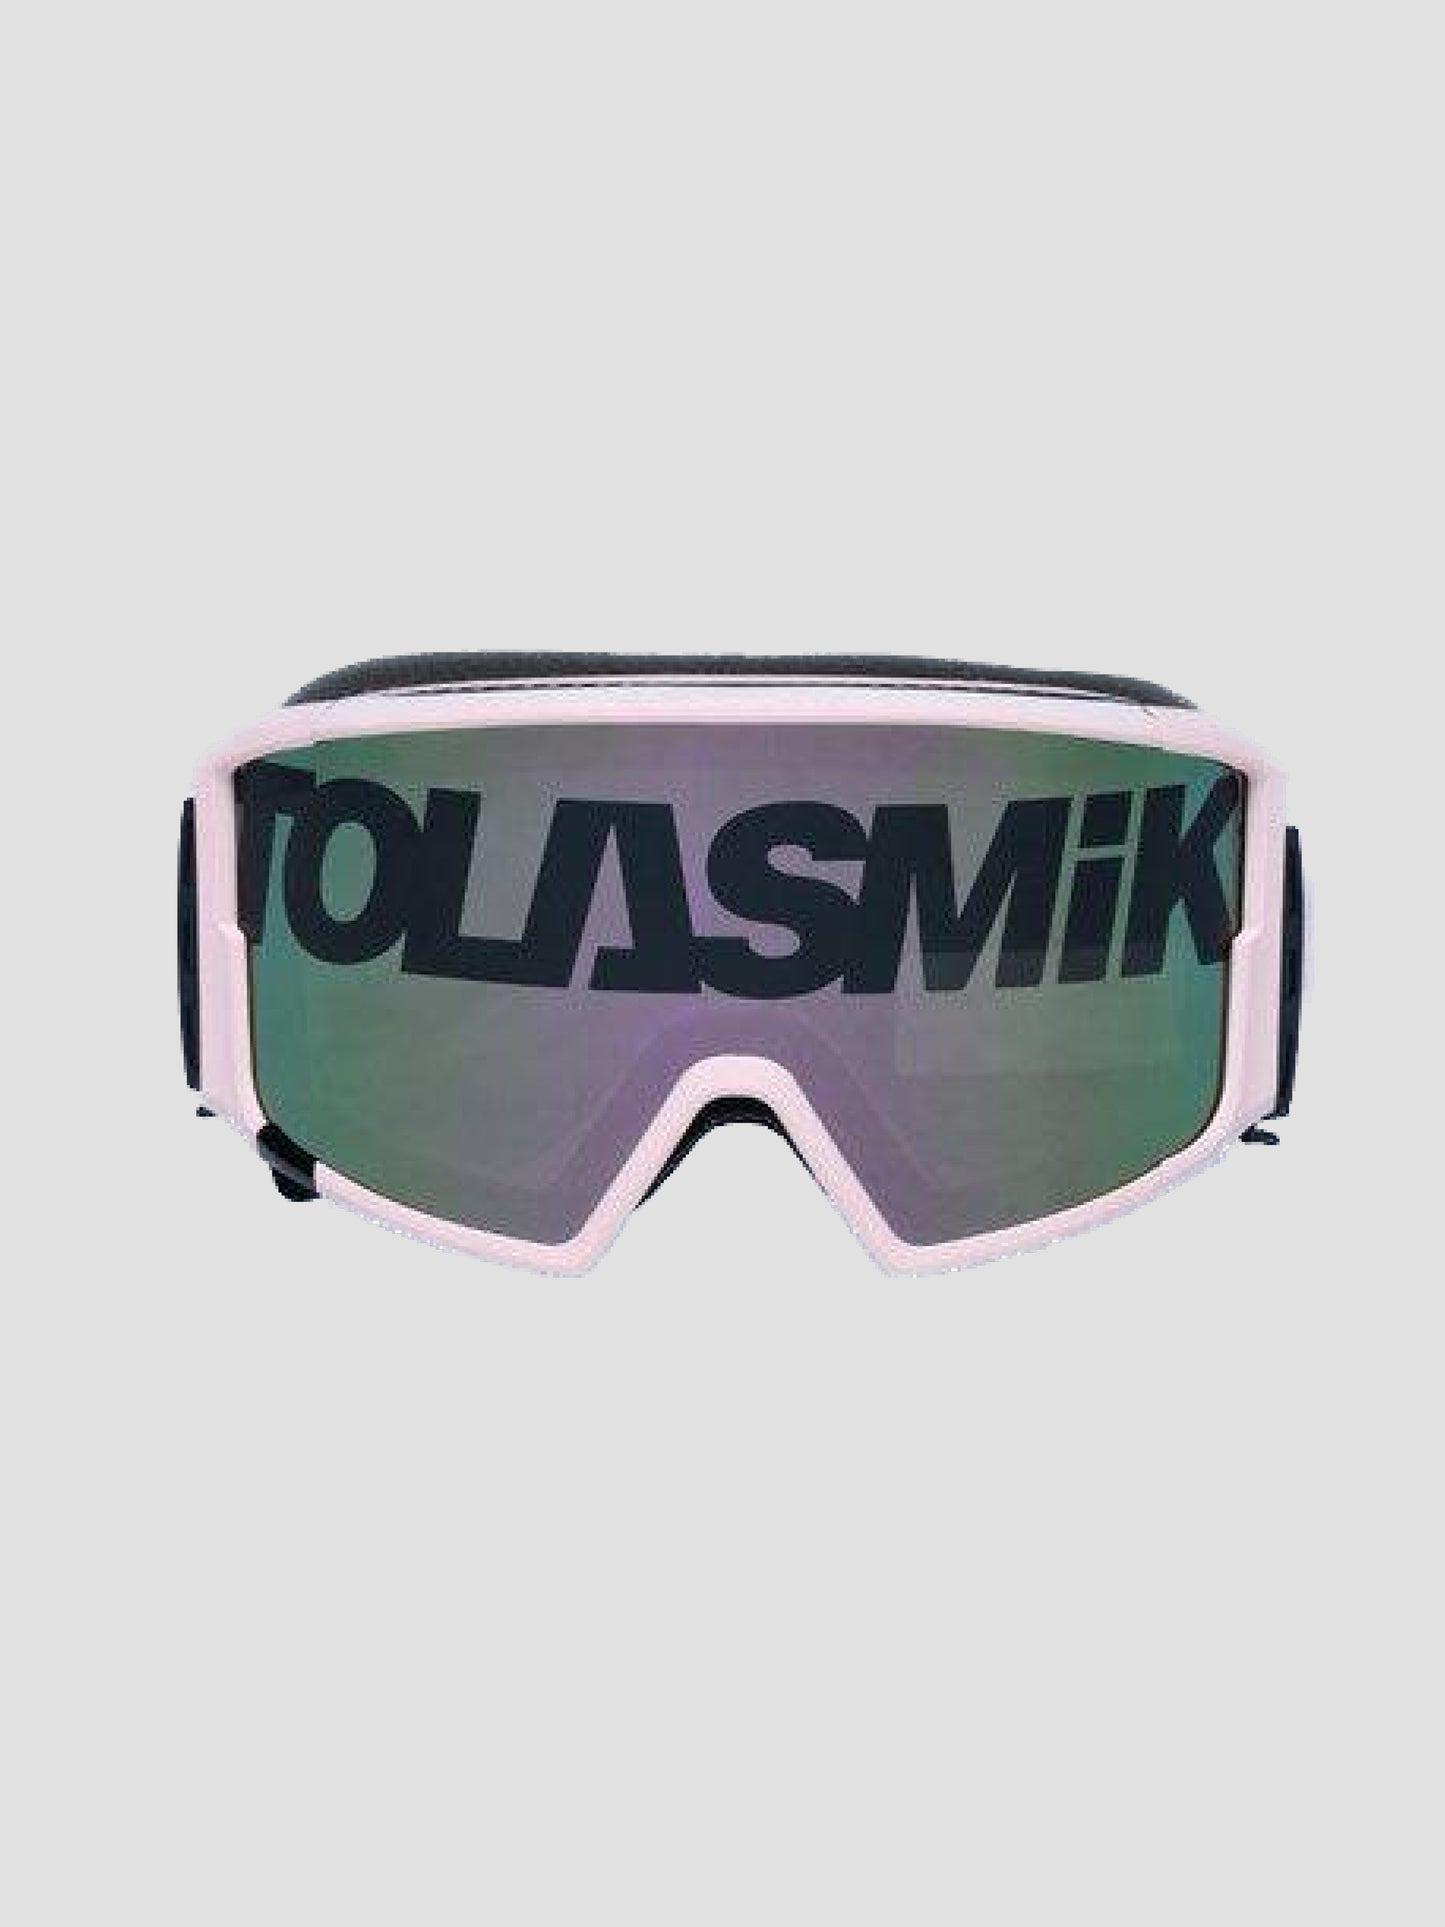 Tolasmik Magnetic Snow Goggles Classics